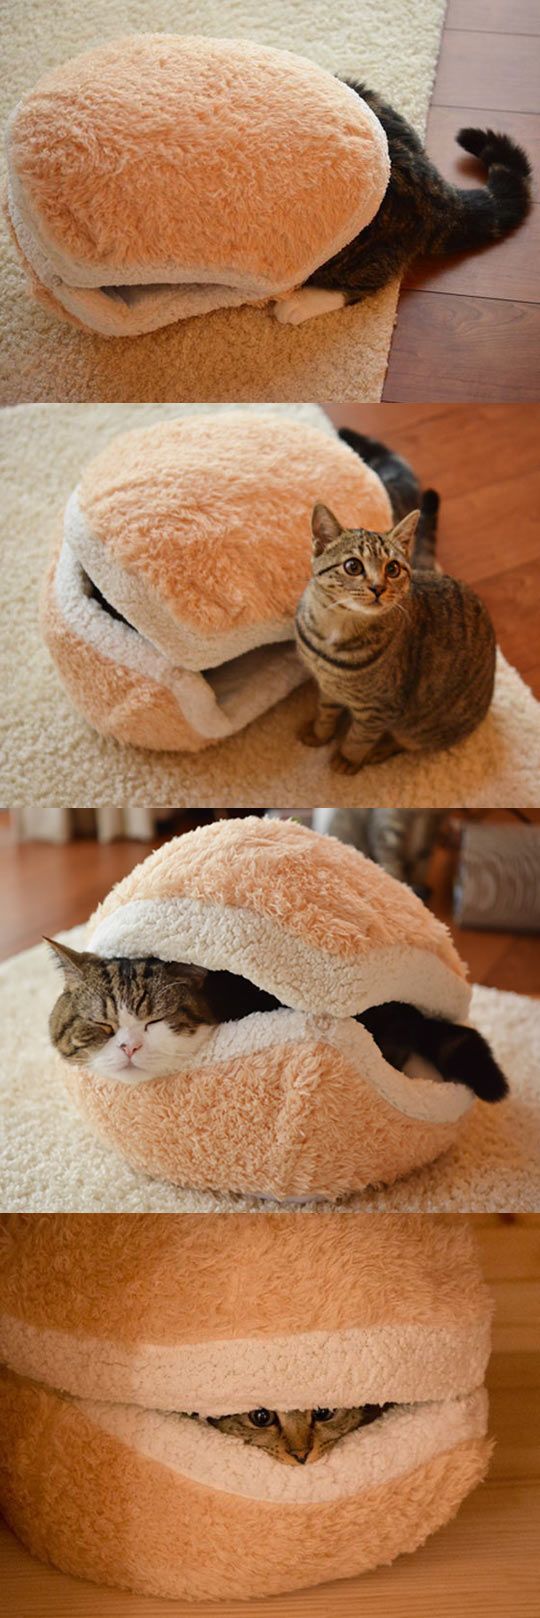 cute cat sammich bed